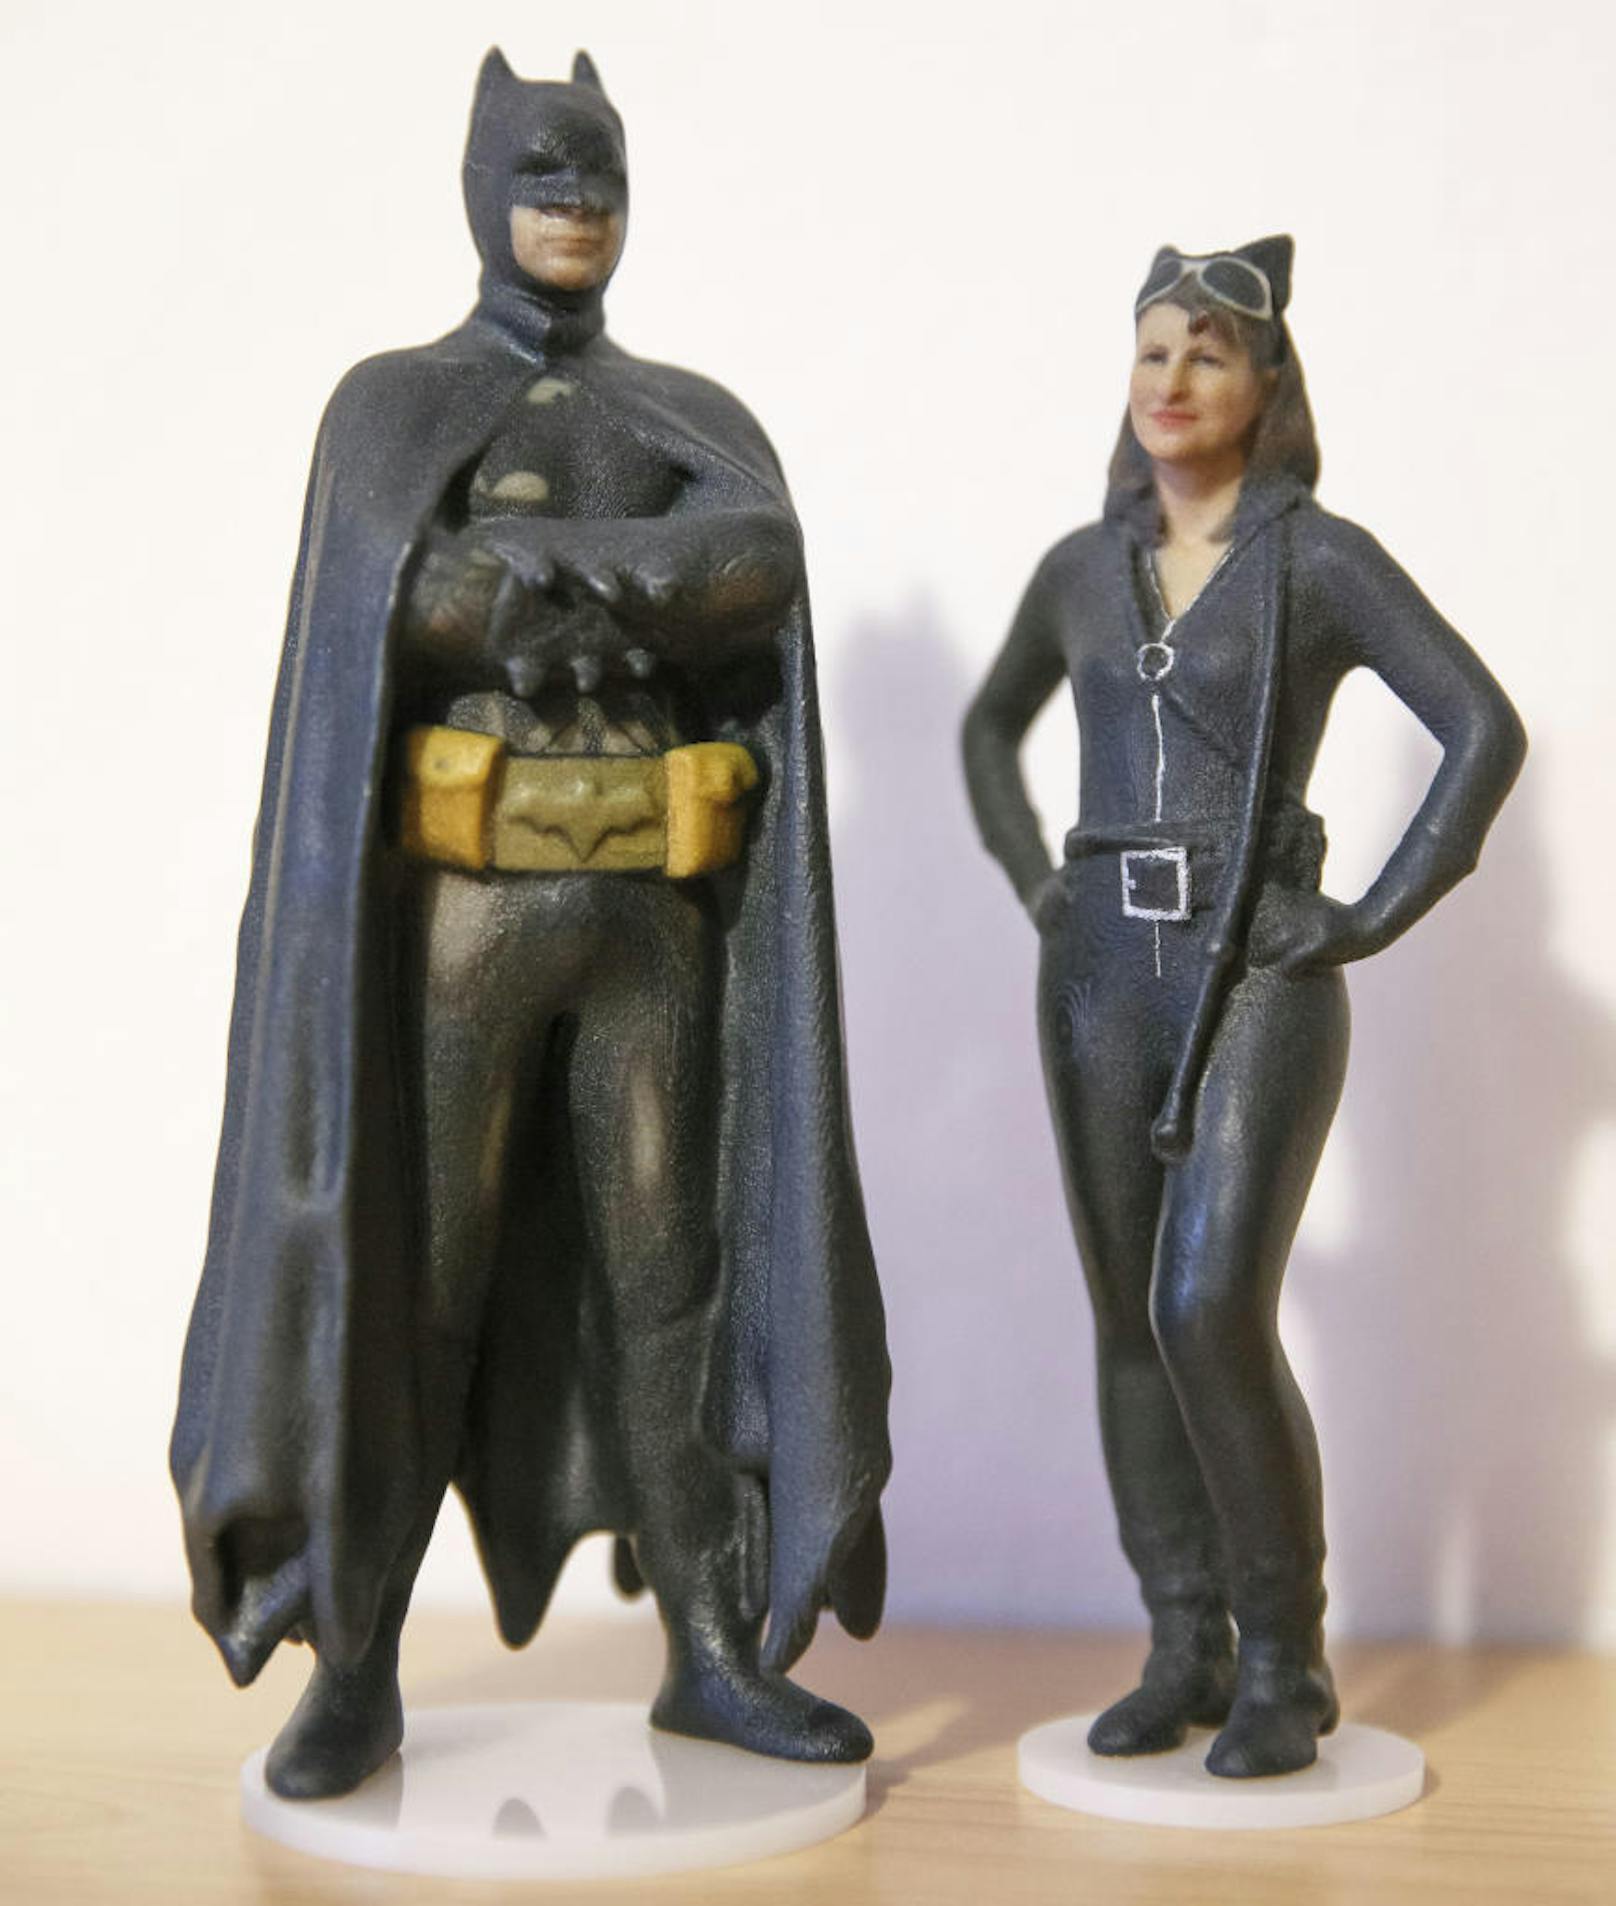 Andreas T. mit seiner Frau Sandra als Batman- und Catwoman-Figuren.